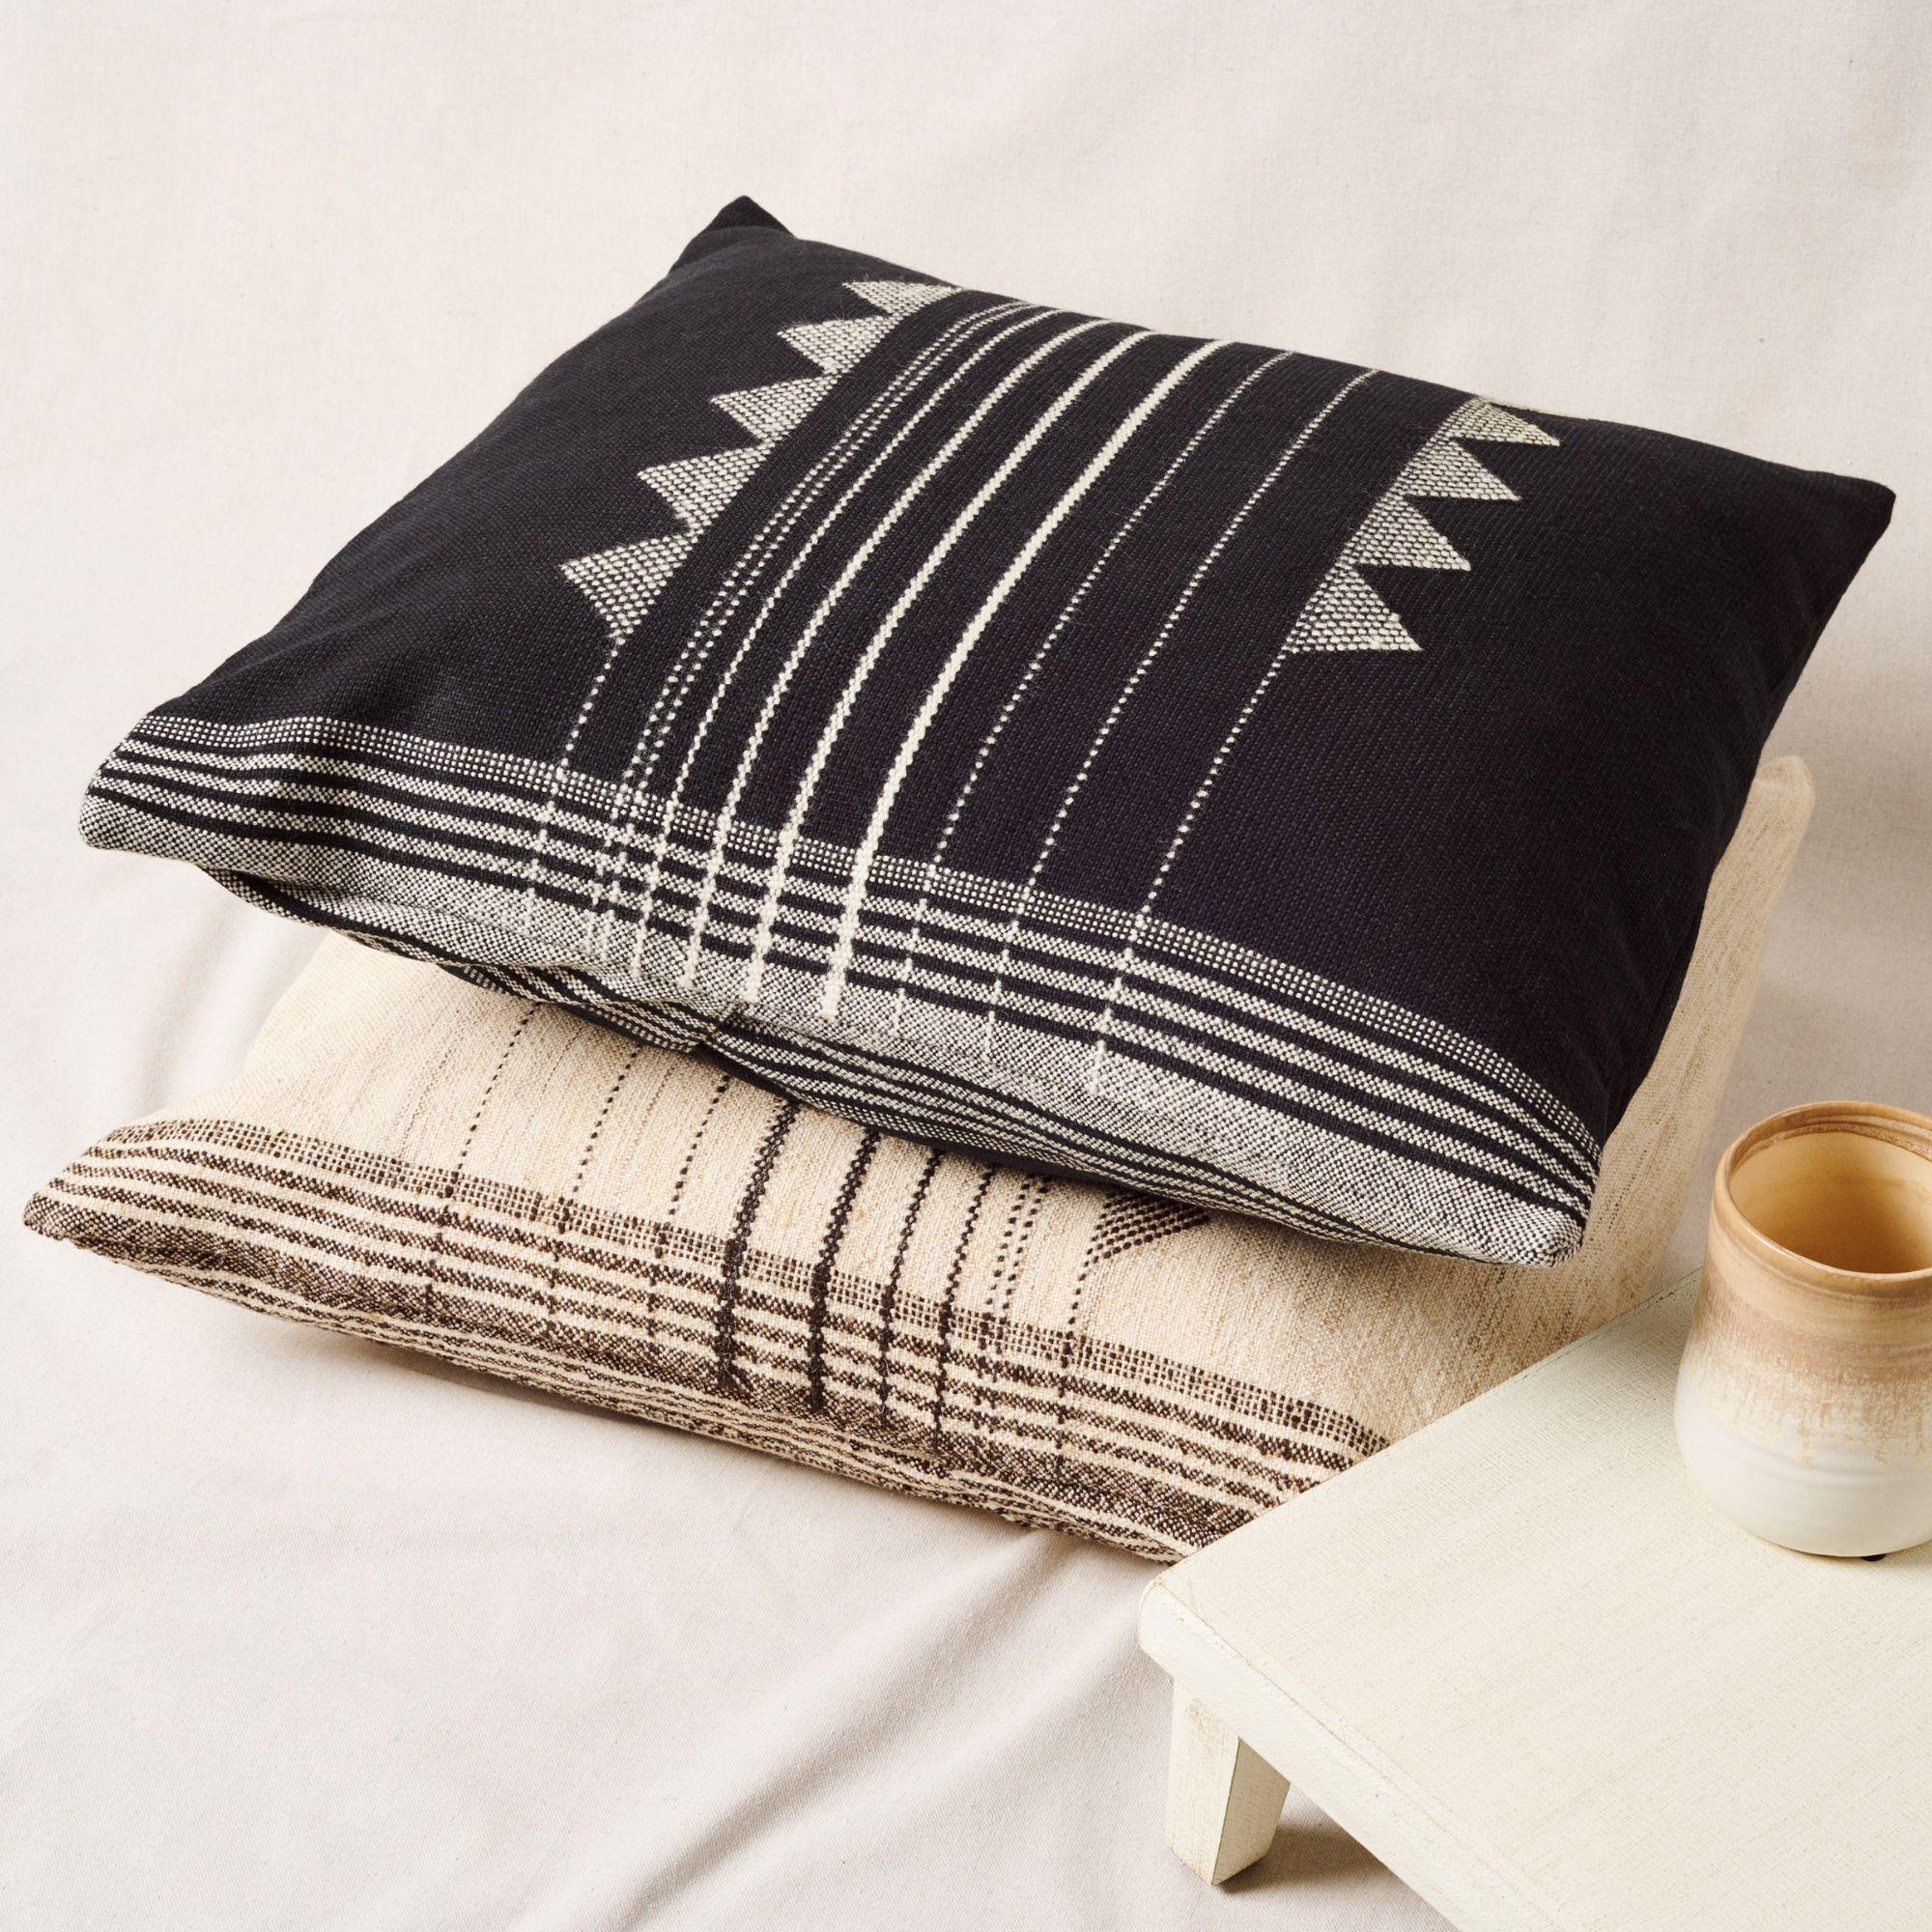 L'oreiller Kora noir est un oreiller tissé à la main légèrement texturé où nos artisans ont habilement mélangé des fils filés à la main comme la soie, la laine et le coton biologique. La beauté de ce coussin réside dans la pureté de son design qui